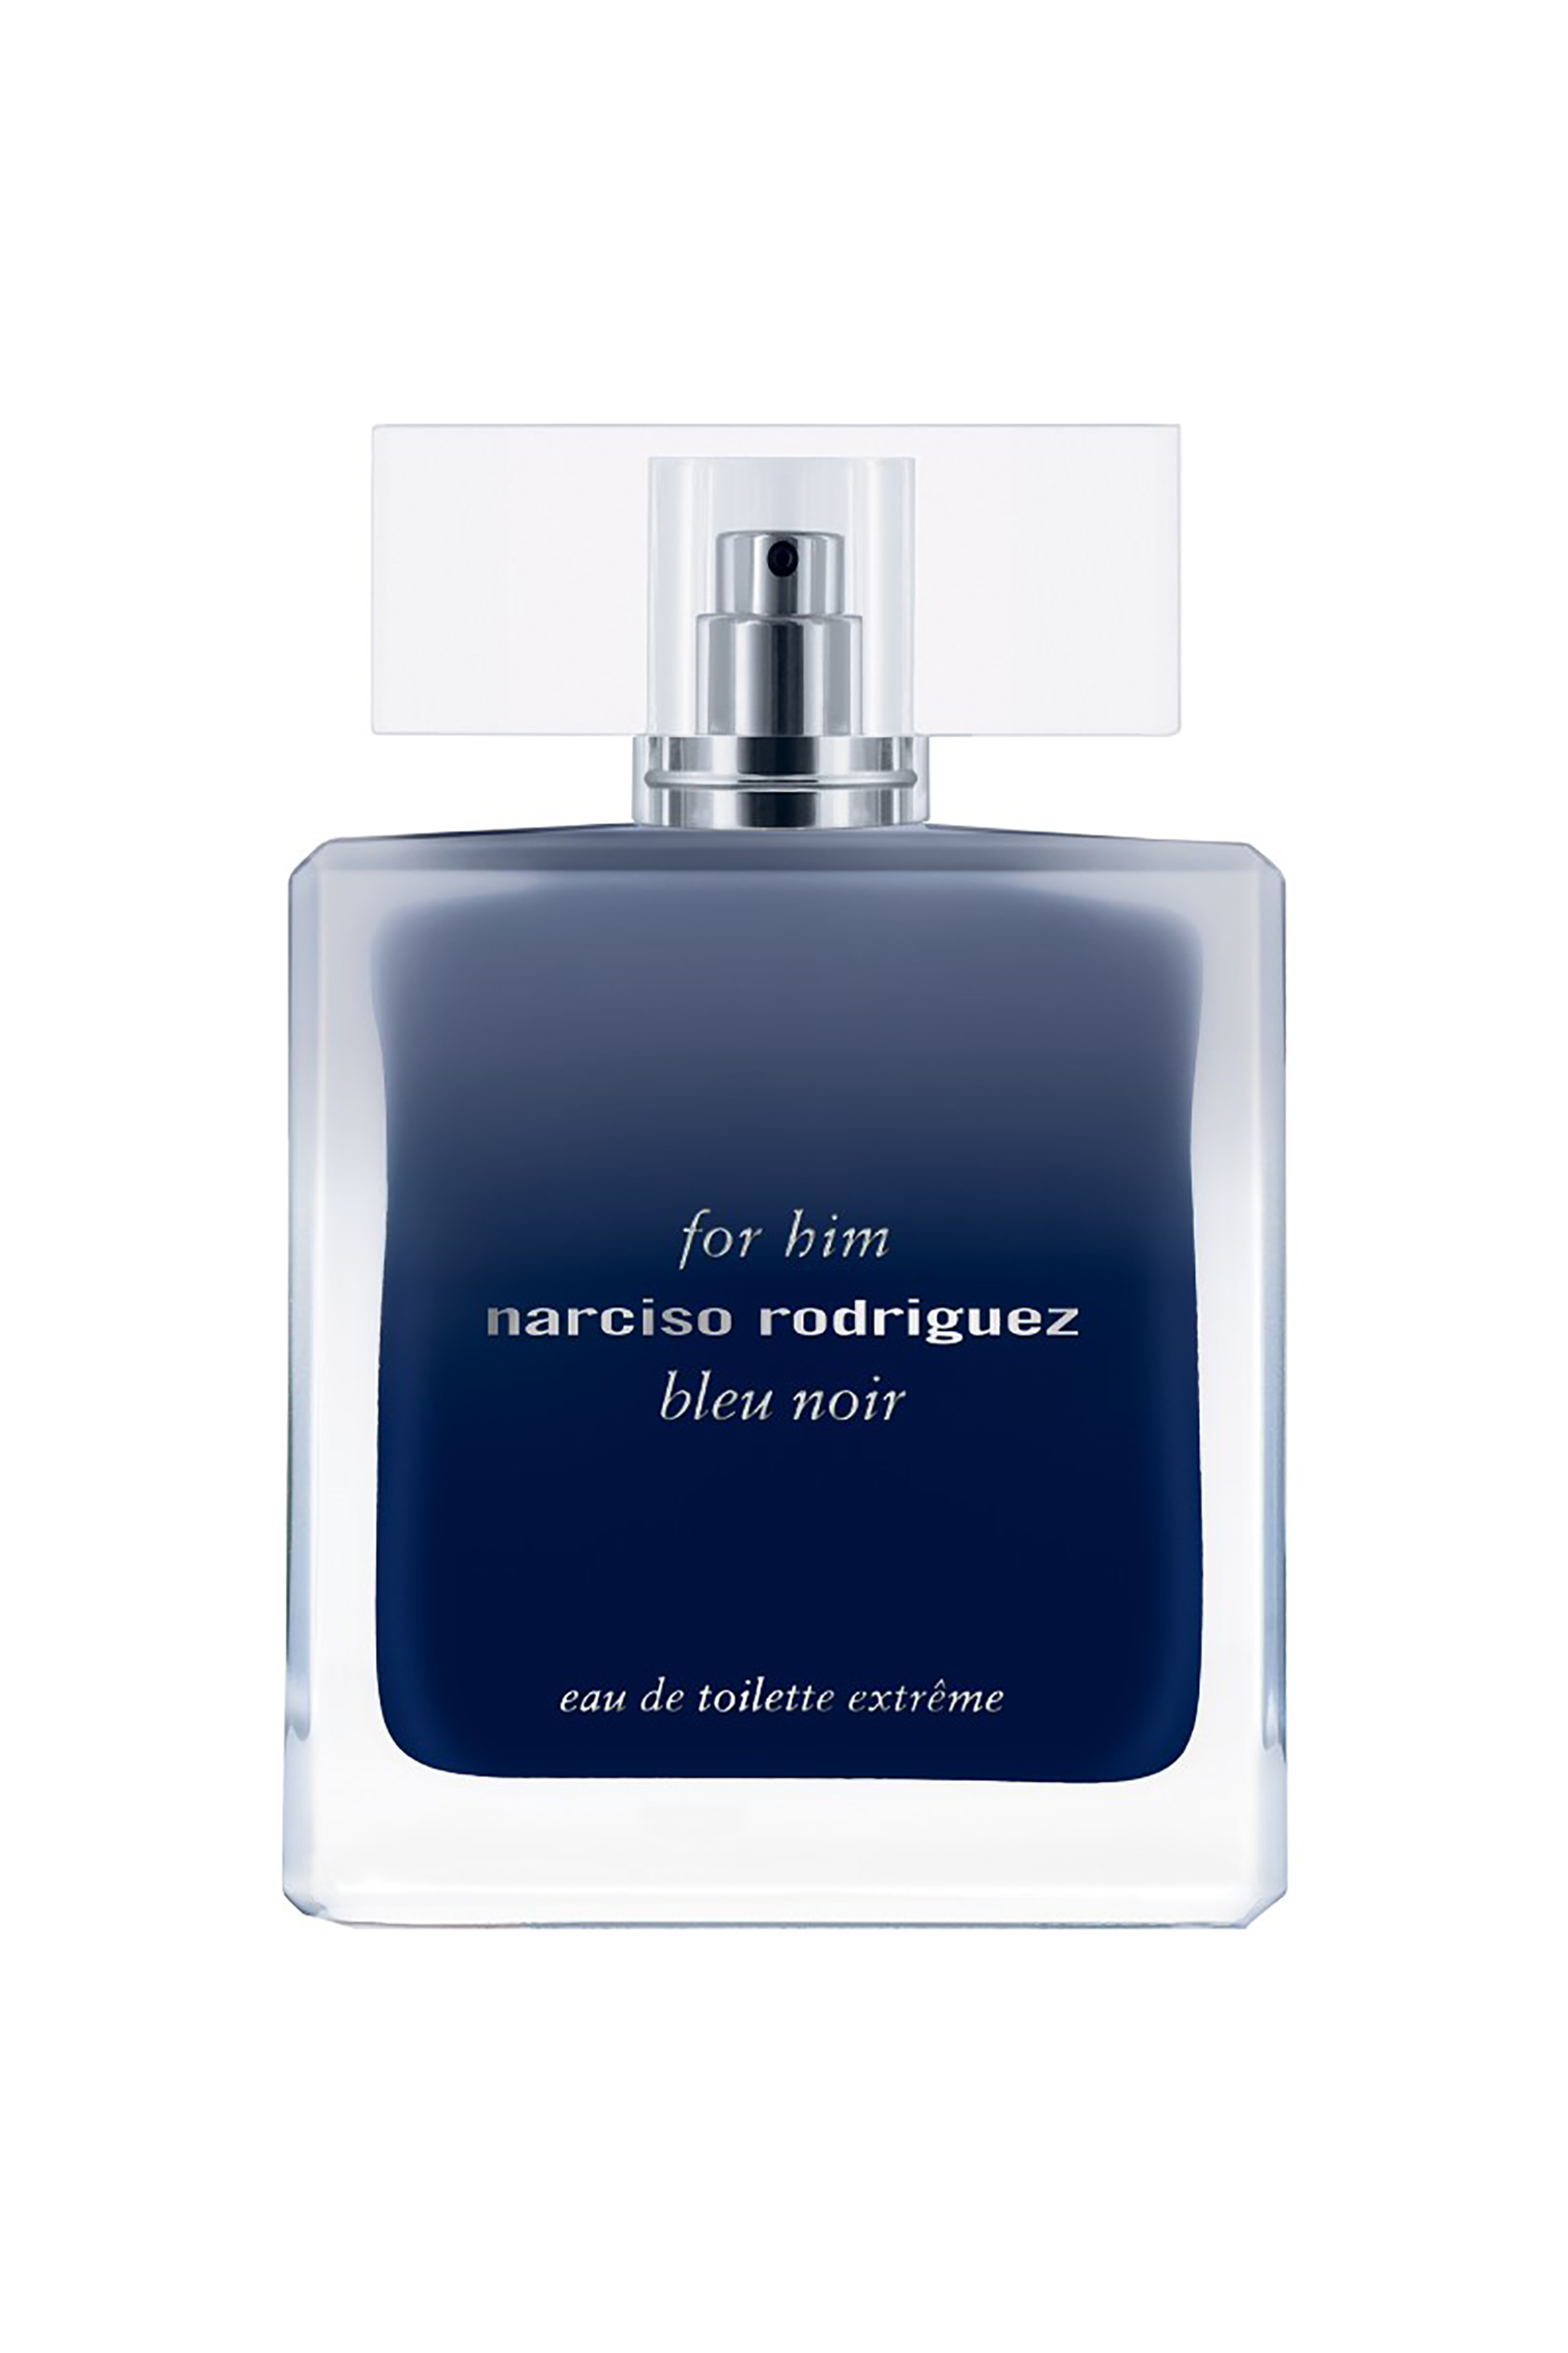 Narciso Rodriguez For Him Bleu Noir Eau de Toilette Extreme - 89992500000 1056543